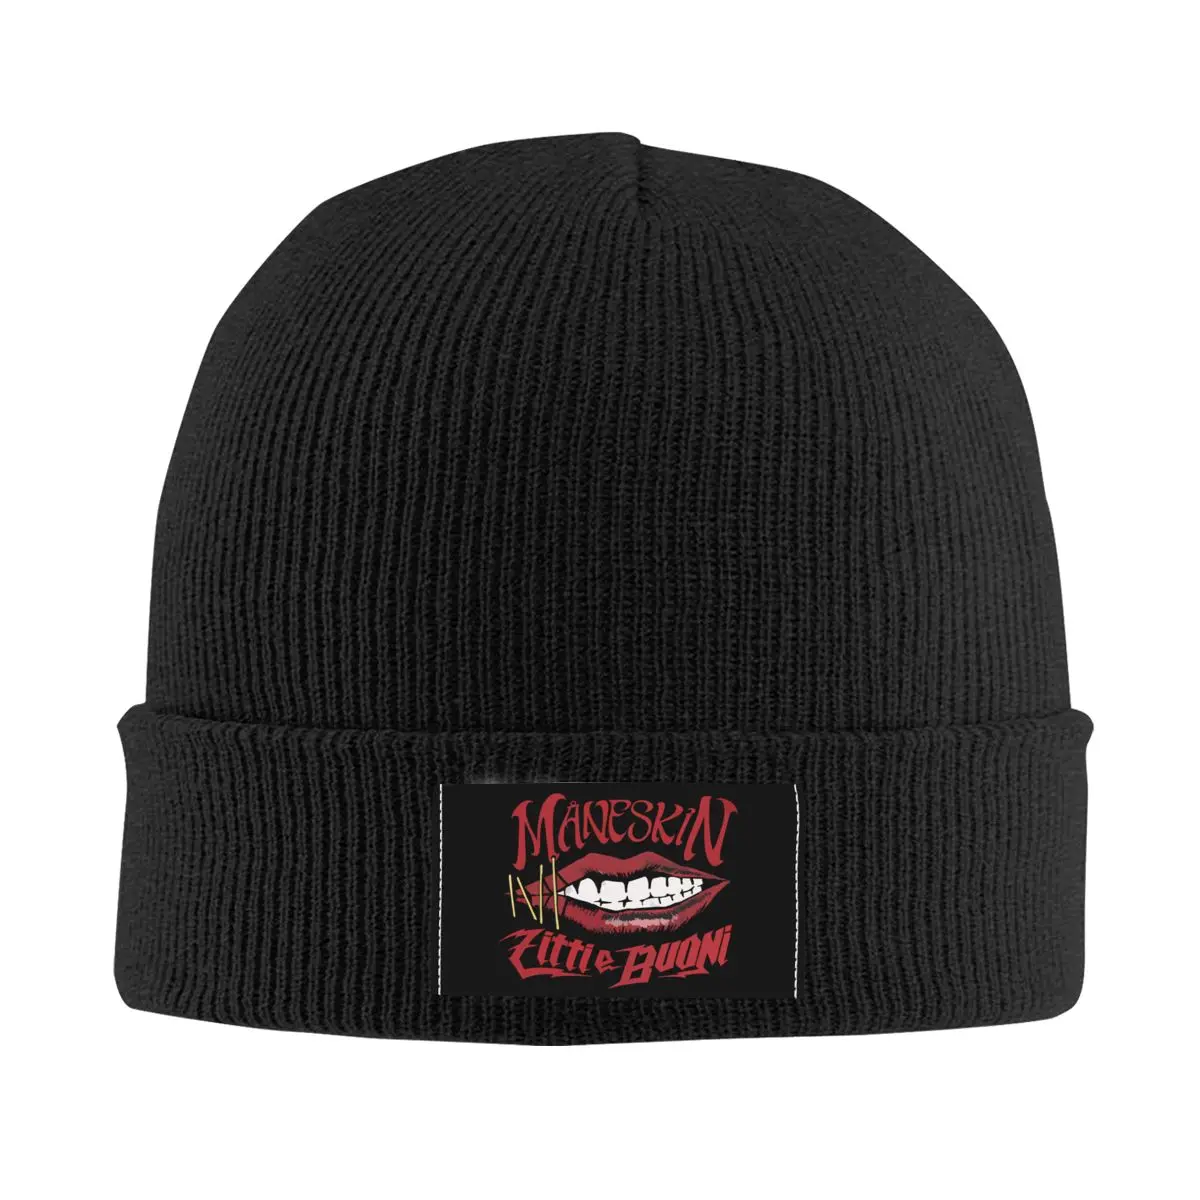 

Шапка-бини Maneskin в итальянском стиле рок-музыки, шапка унисекс, зимняя теплая вязаная шапка для мужчин и женщин, крутая шапка для взрослых, шапки, лыжная шапка для активного отдыха